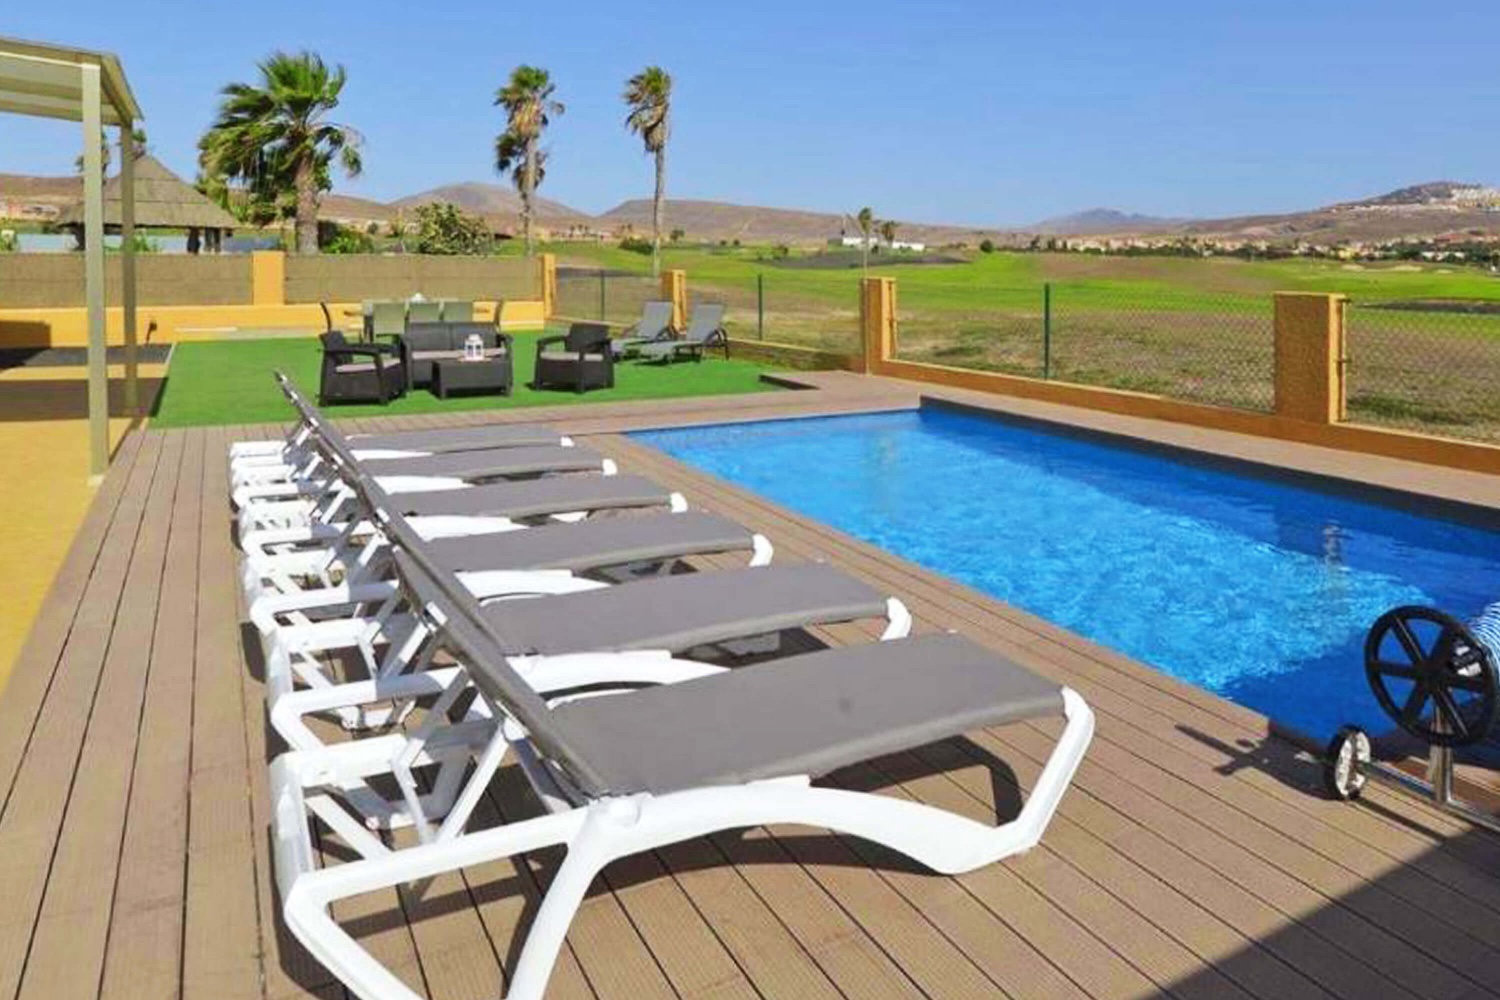 Maison de vacances avec piscine privée près du golf de Las Salinas, parfaite pour des vacances reposantes en famille